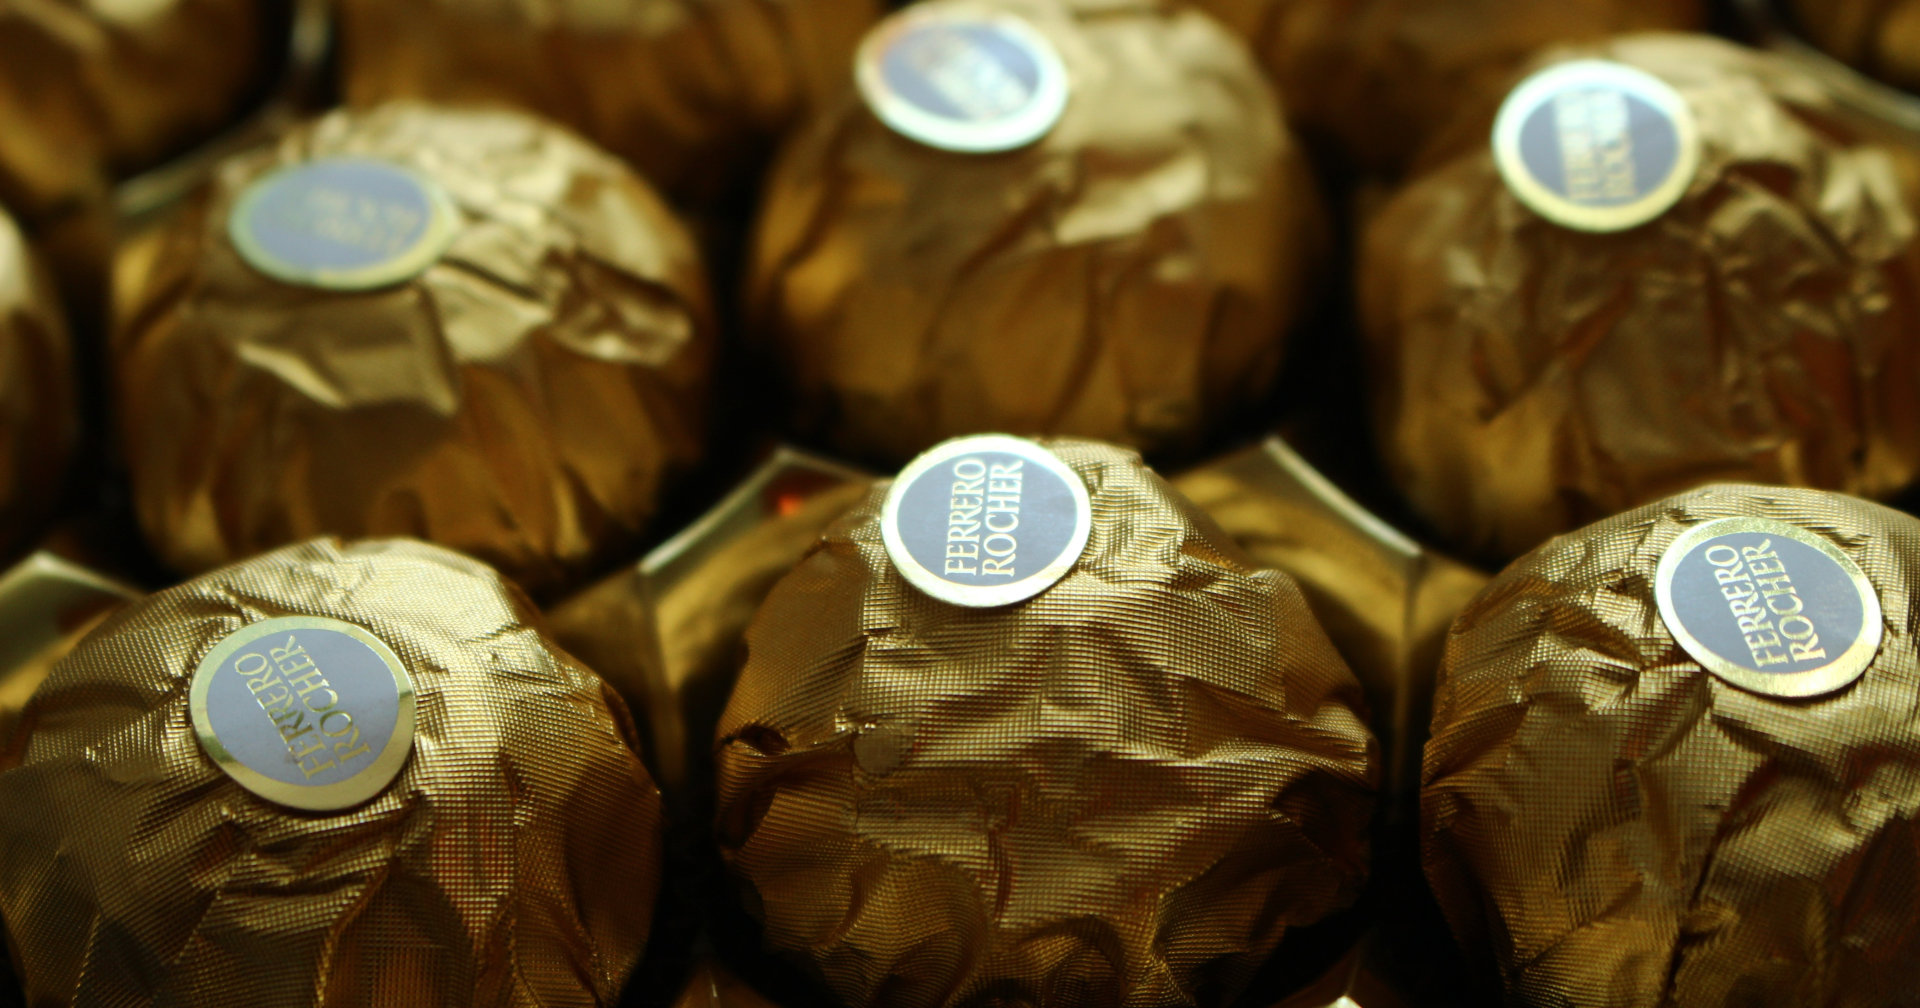 ต้นกำเนิด Ferrero Group อาณาจักรขนมหมื่นล้านเหรียญ